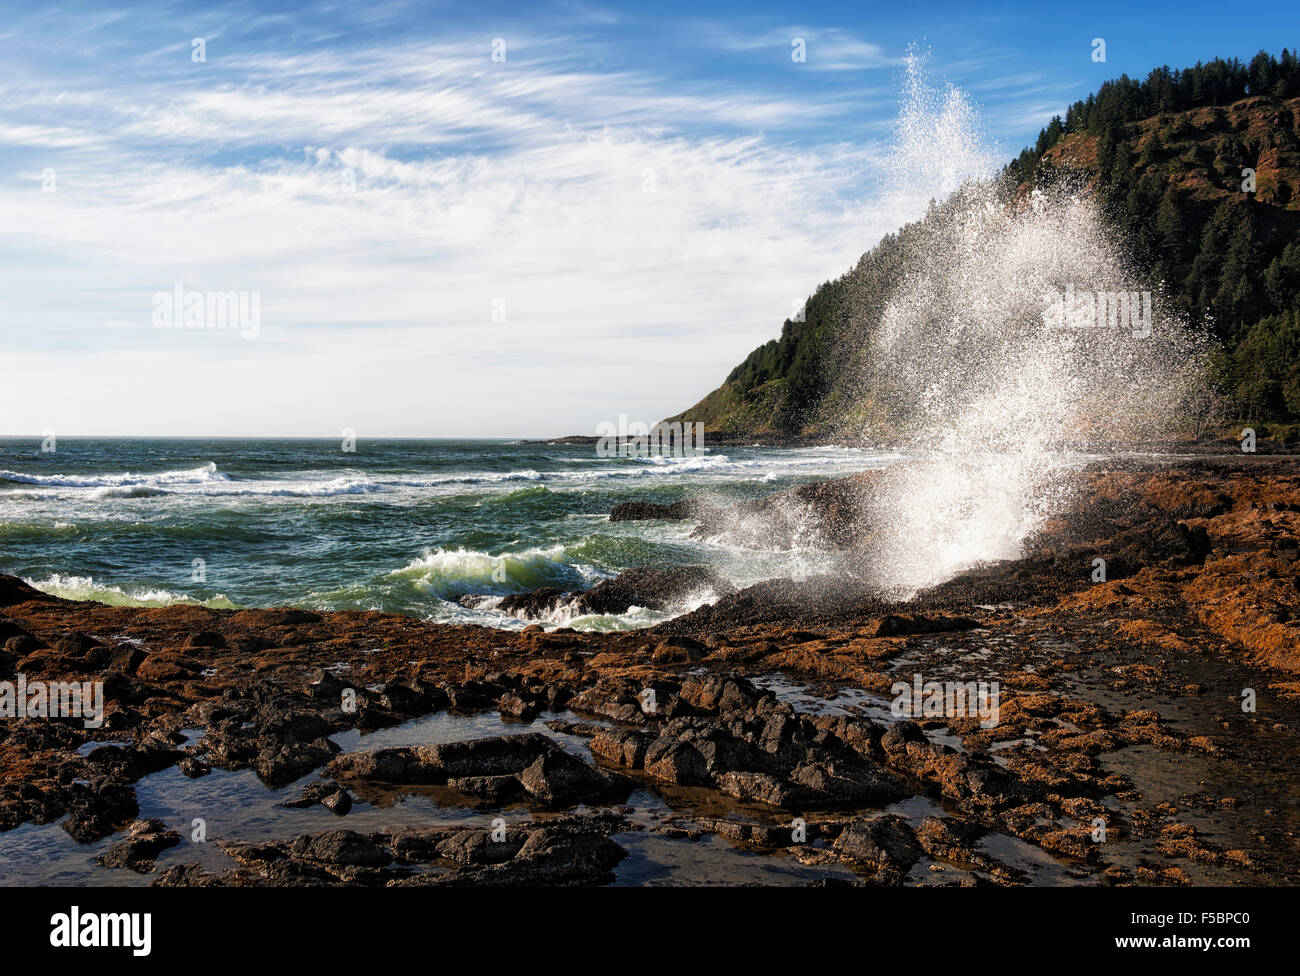 Les voisins musicaux de vagues contre la côte rocheuse de l'Oregon's Cape Perpetua Scenic Area. Banque D'Images